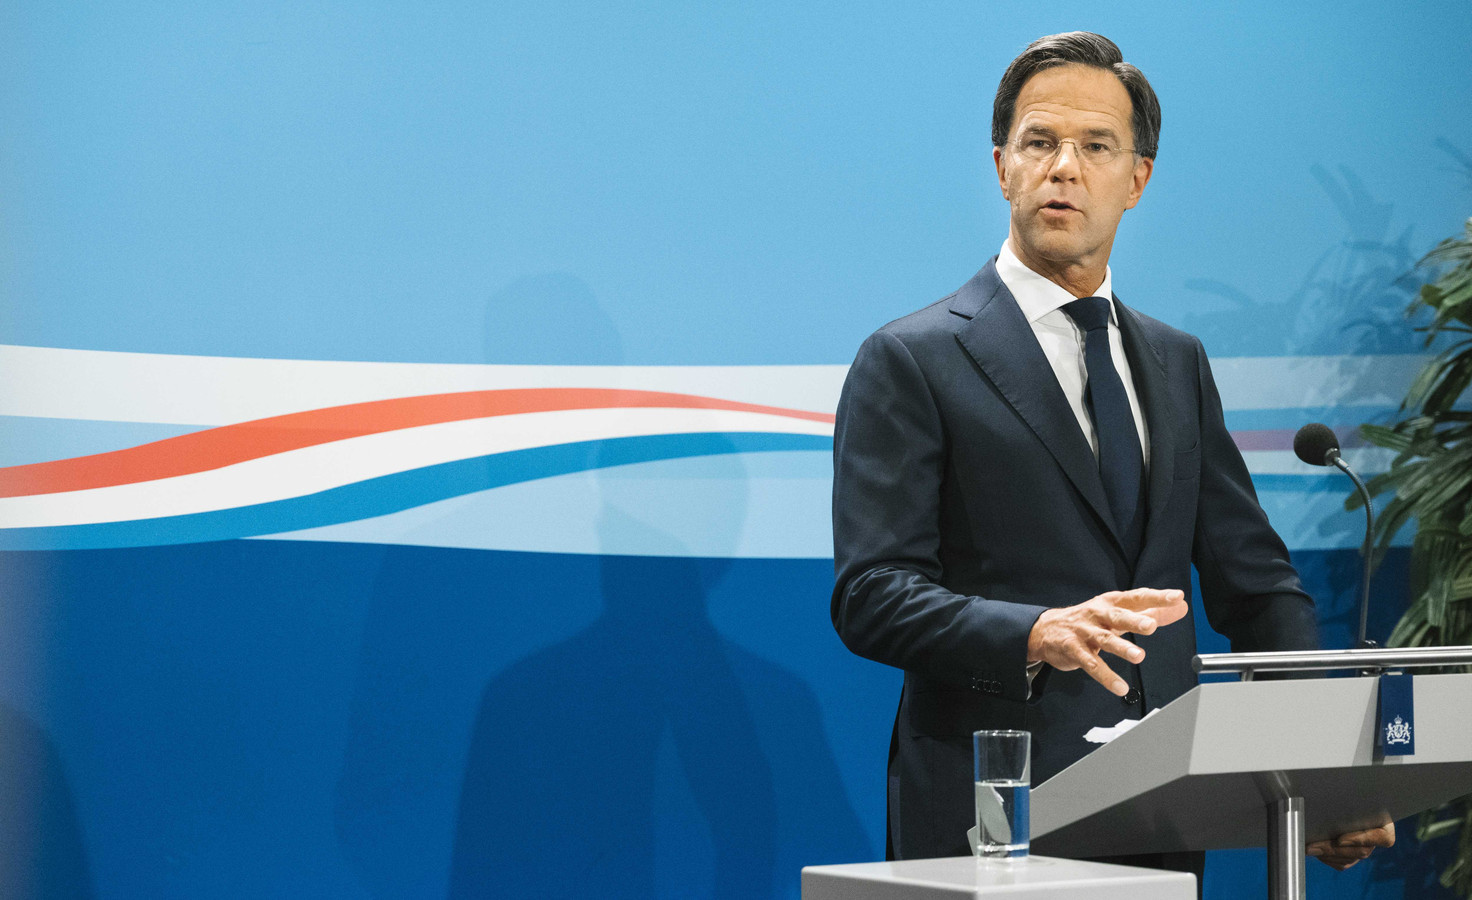 Grote zorgen bij Rutte: 'Corona is bezig aan comeback' | Foto | AD.nl